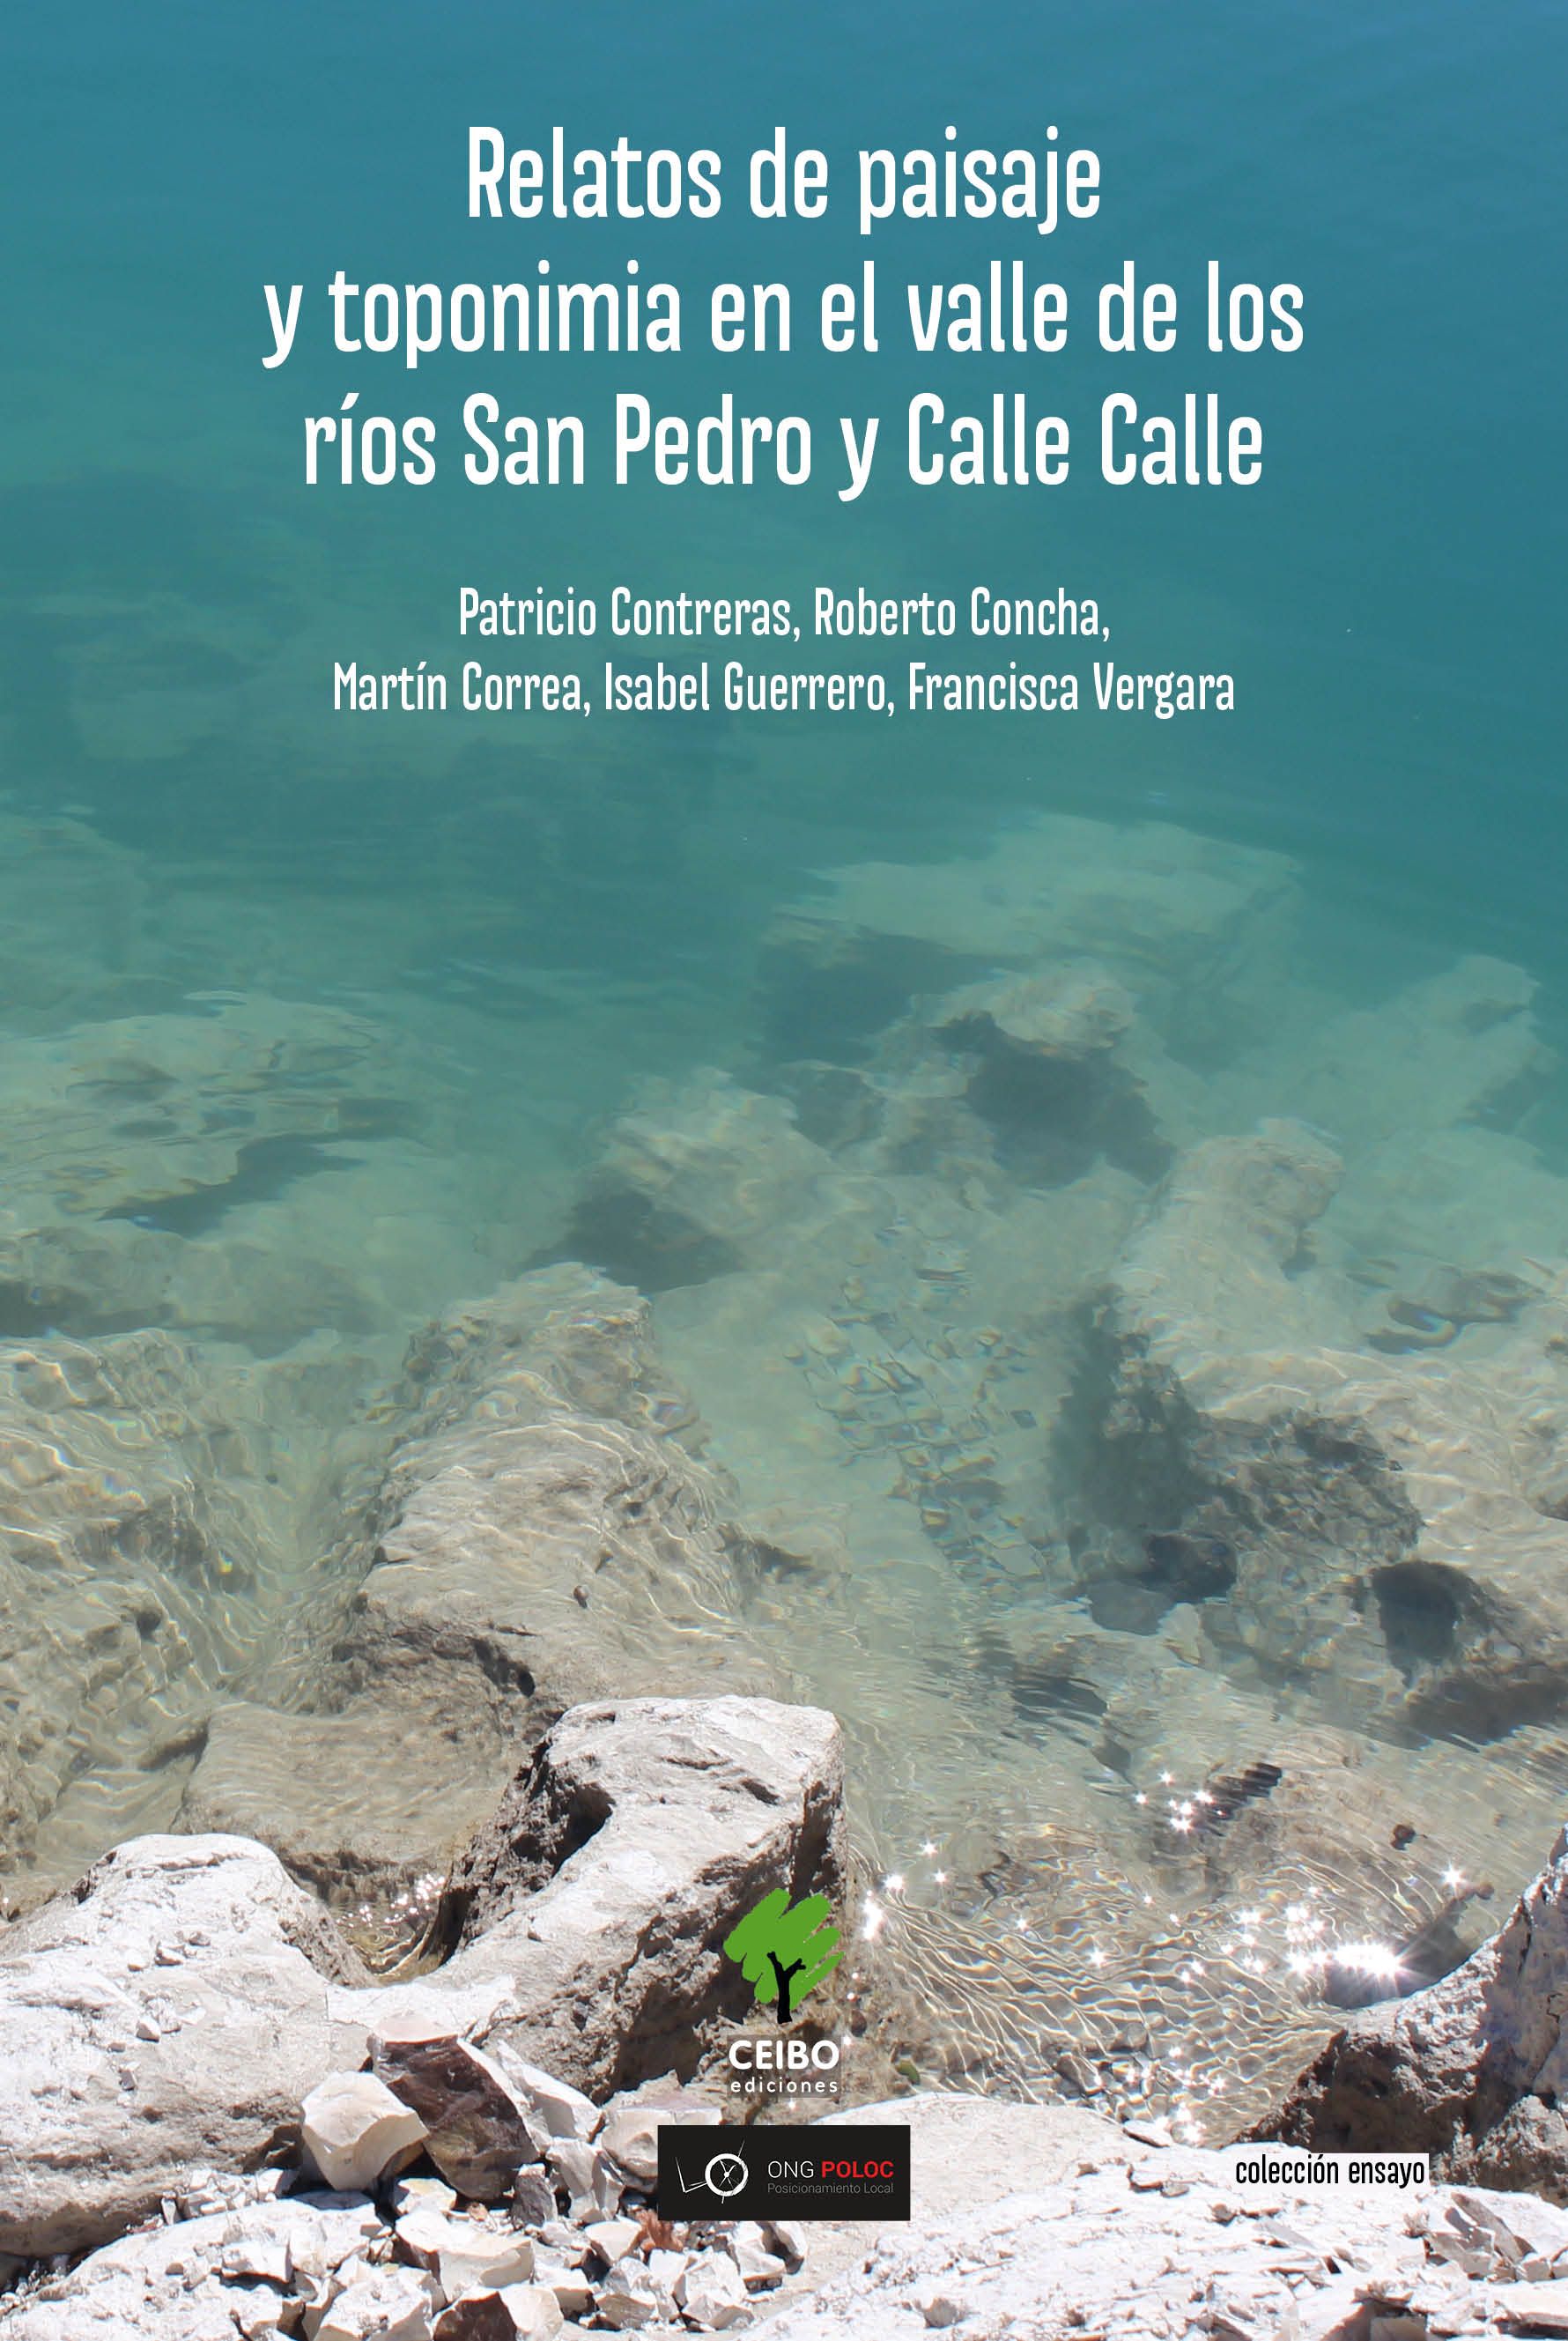 Nuevo libro da cuenta de la vida, desarrollo e identidad alrededor de los ríos Calle Calle y San Pedro